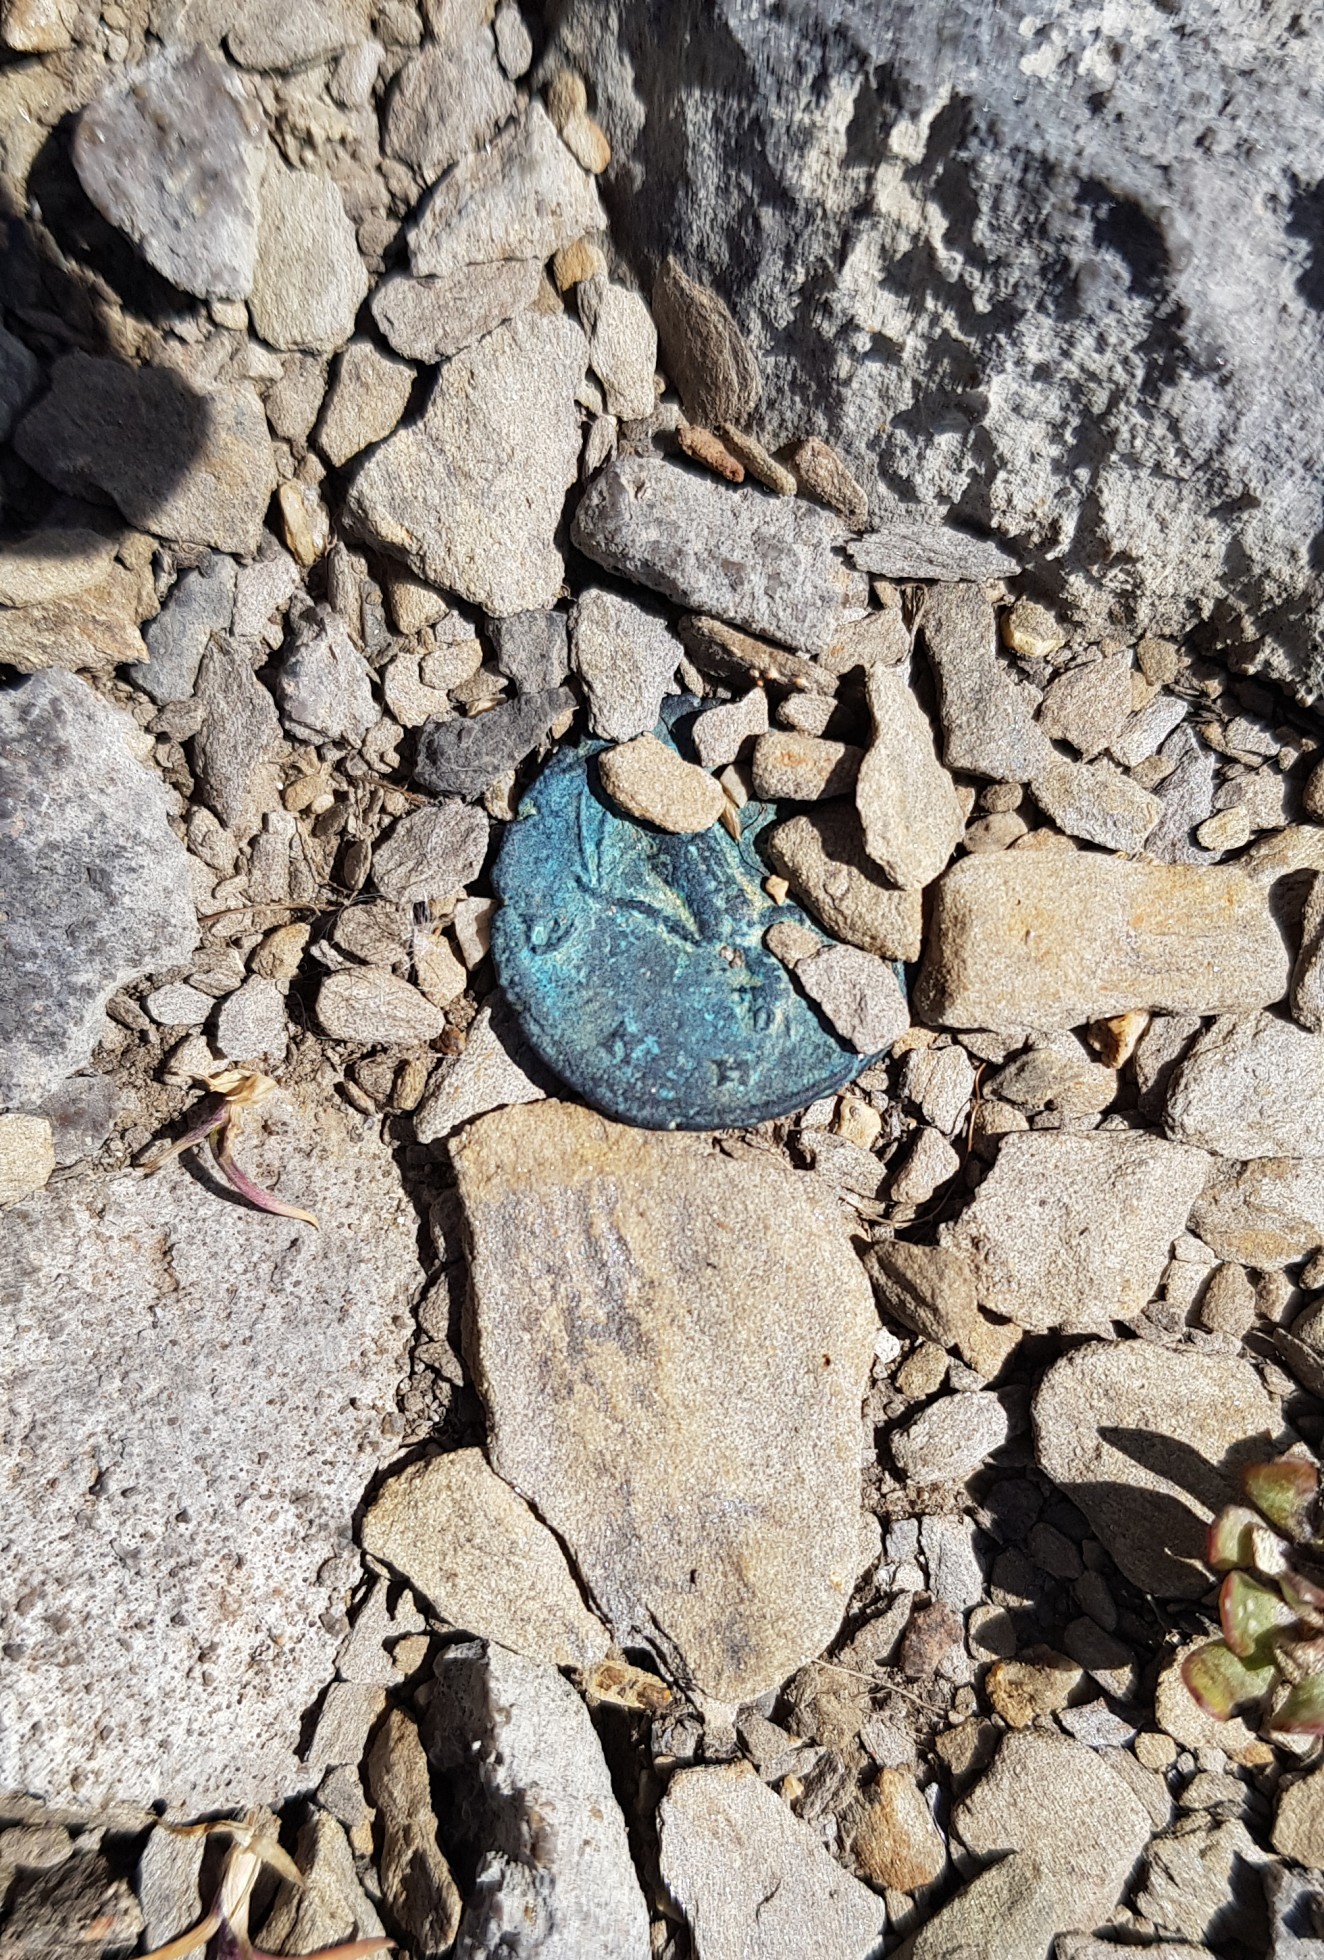 Une monnaie romaine découverte sur le lieu des fouilles par les archéologues cantonaux bernois.